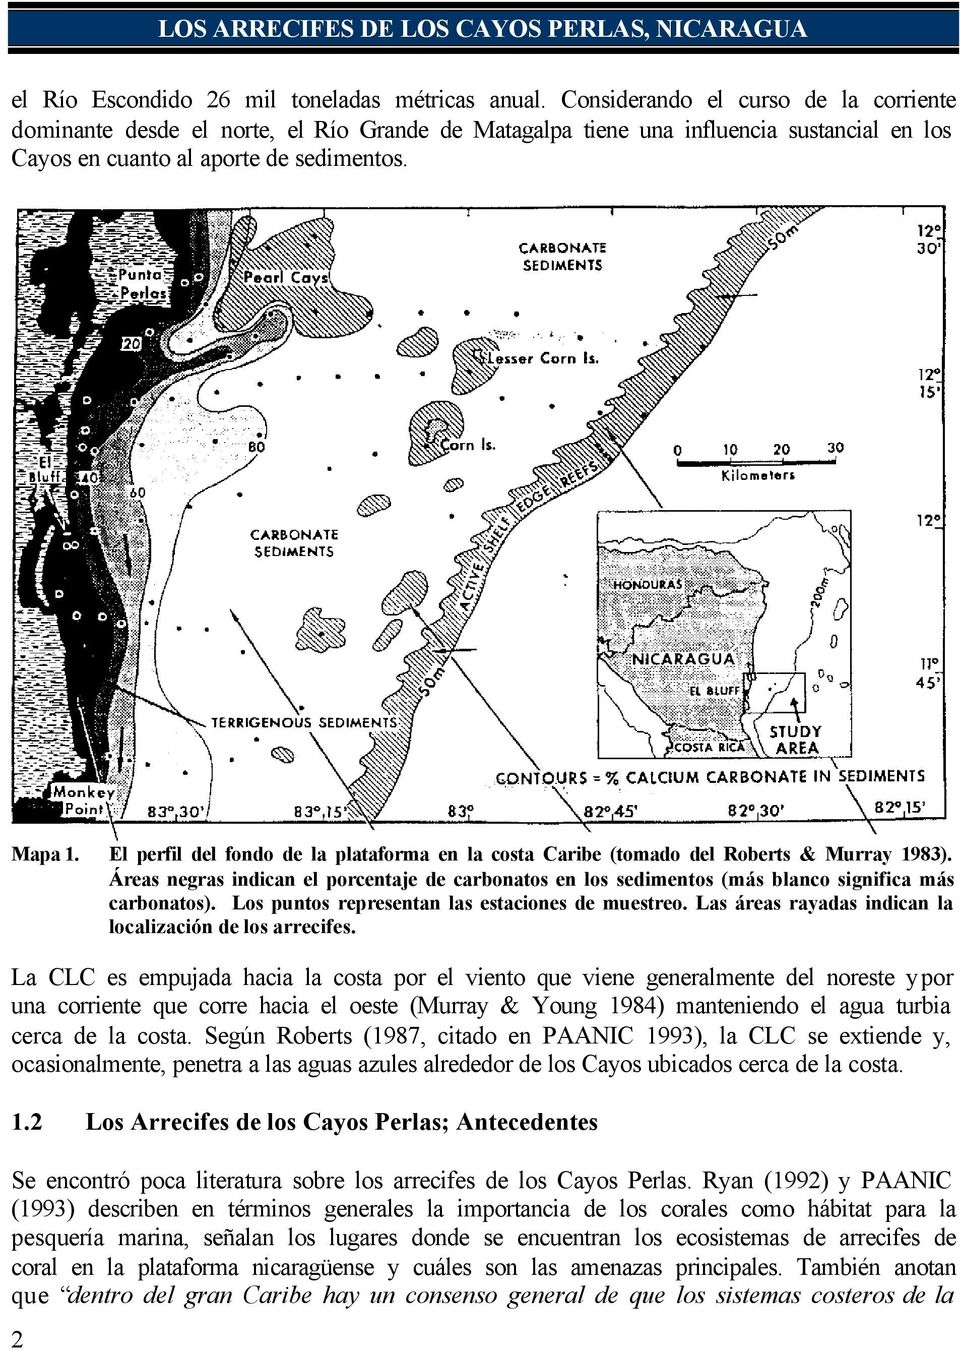 El perfil del fondo de la plataforma en la costa Caribe (tomado del Roberts & Murray 1983). Áreas negras indican el porcentaje de carbonatos en los sedimentos (más blanco significa más carbonatos).